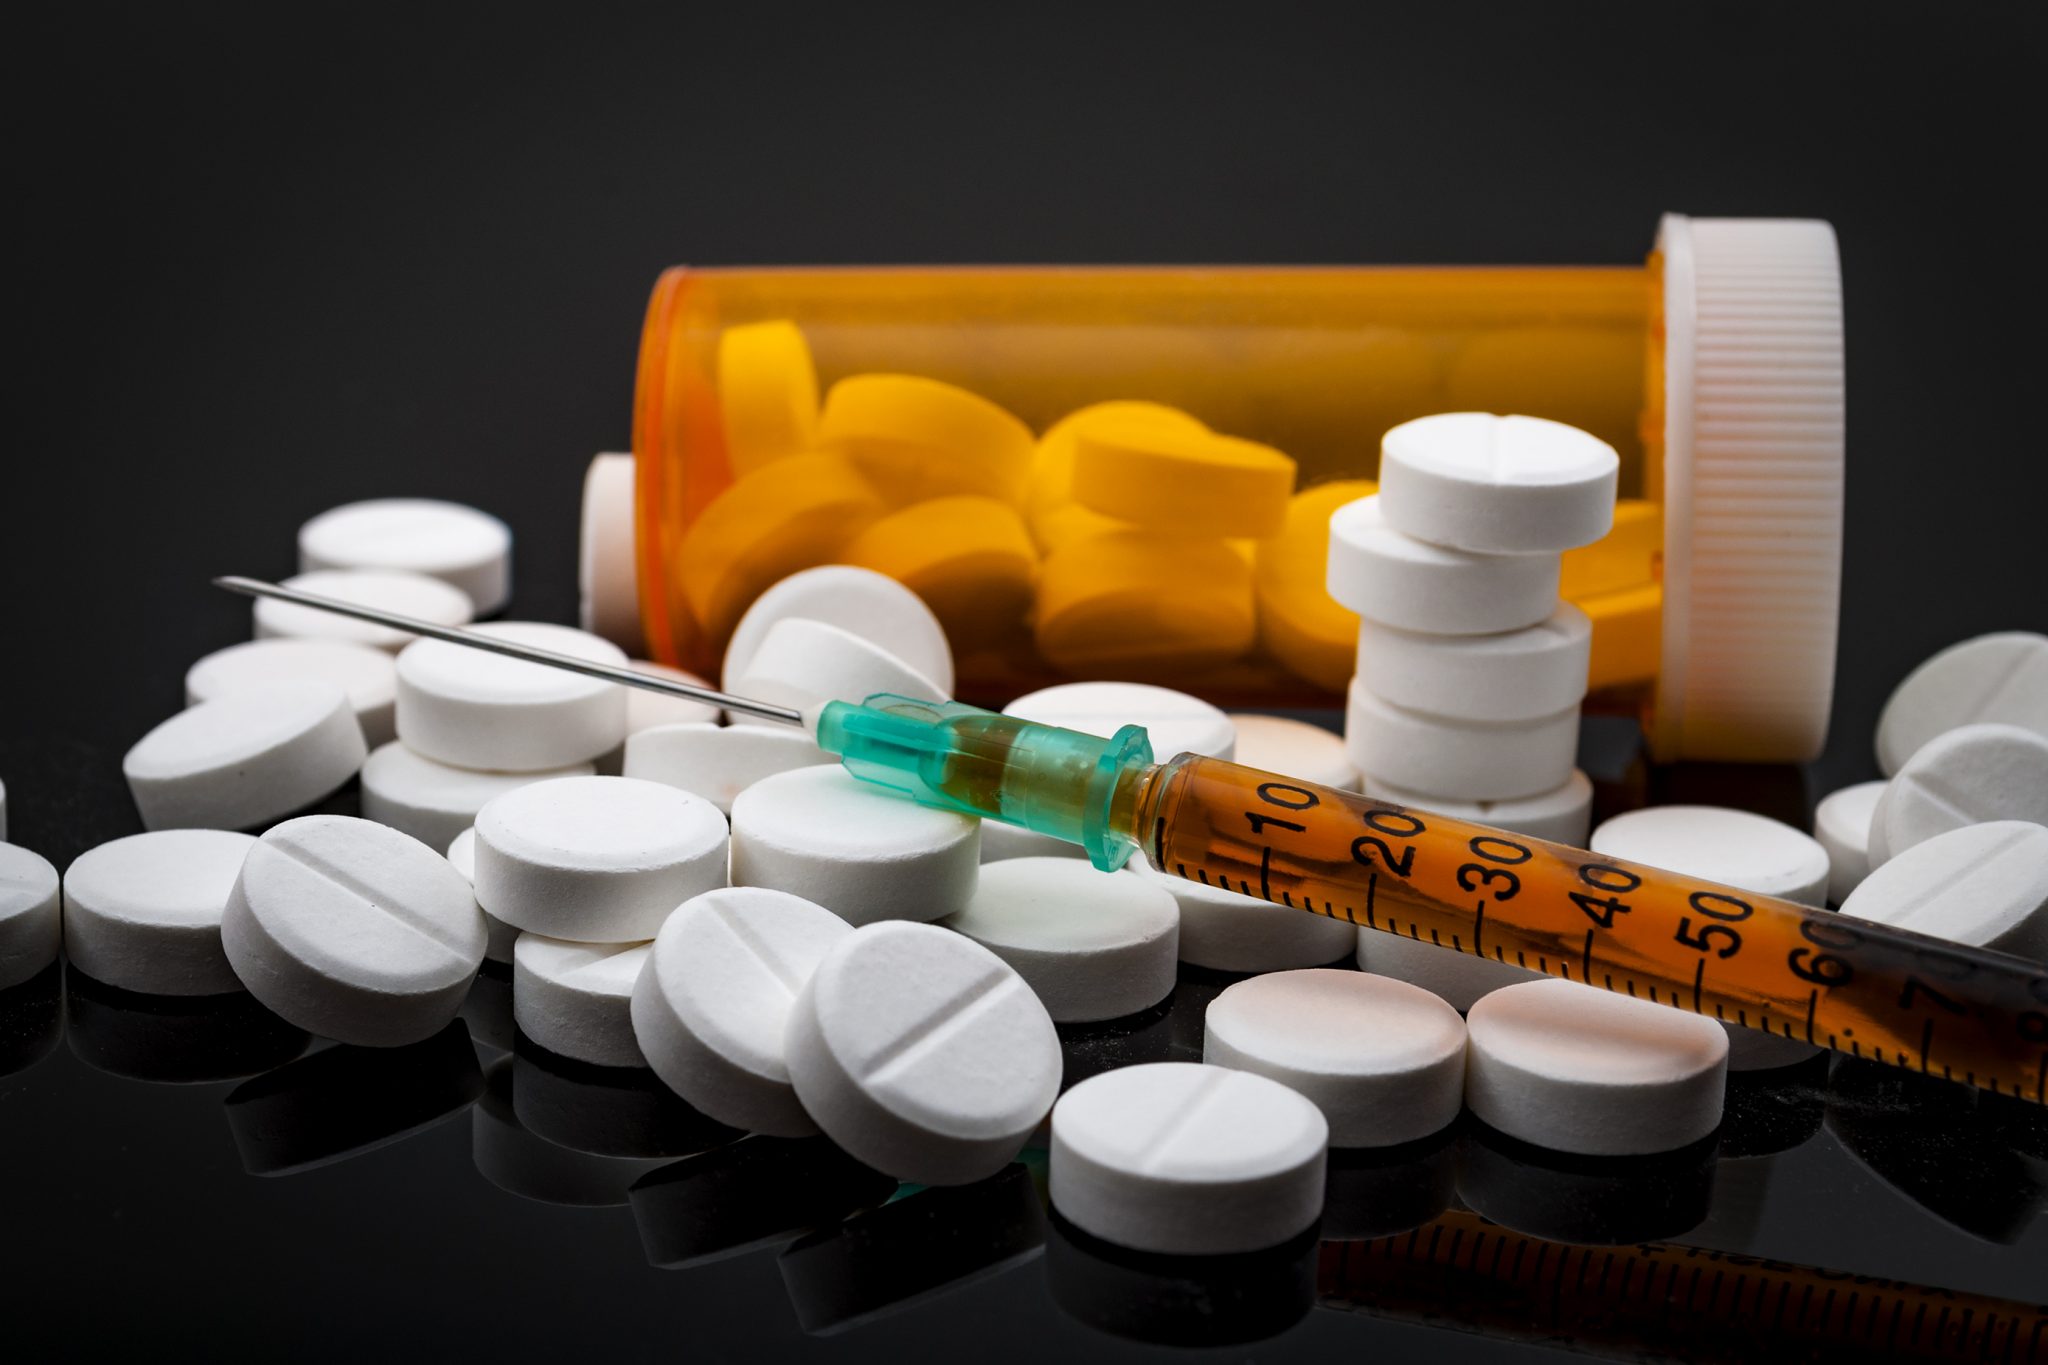 Prescription drug bottle, spilled opioid pills with Syringe